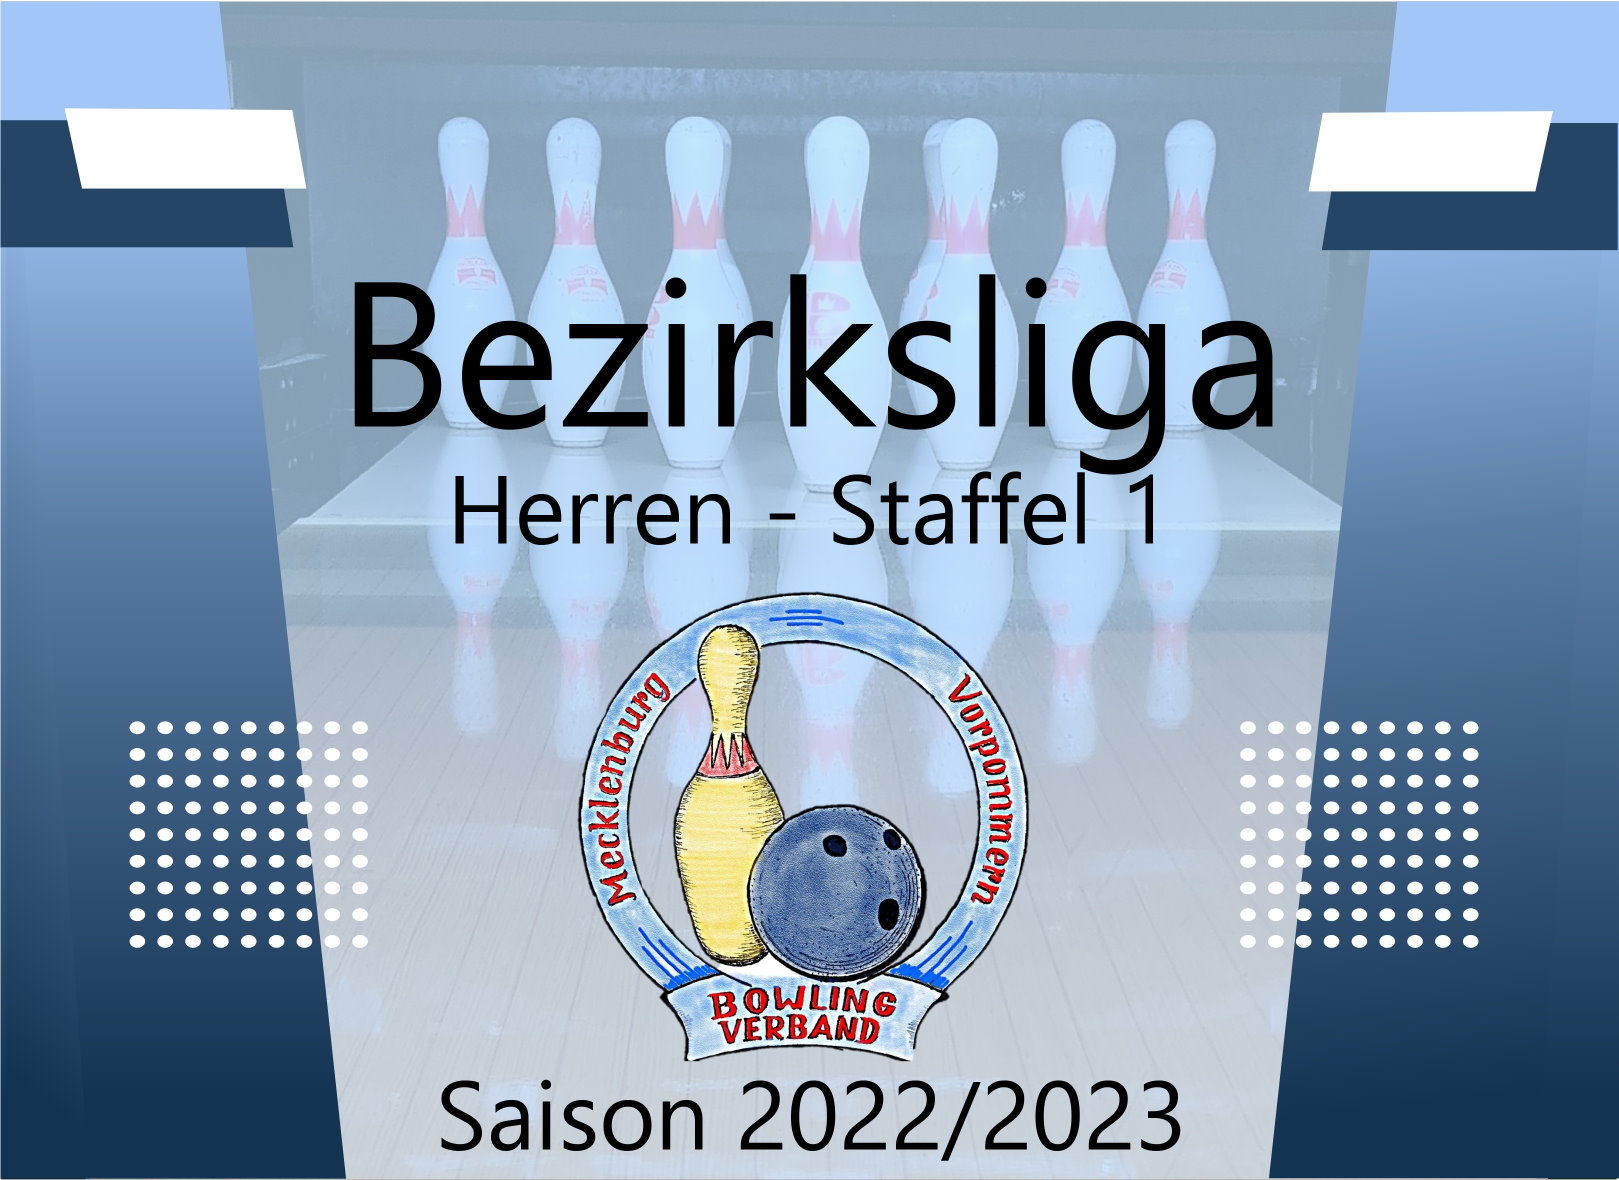 Bezirksliga Herren Staffel 1 - 6. Spieltag